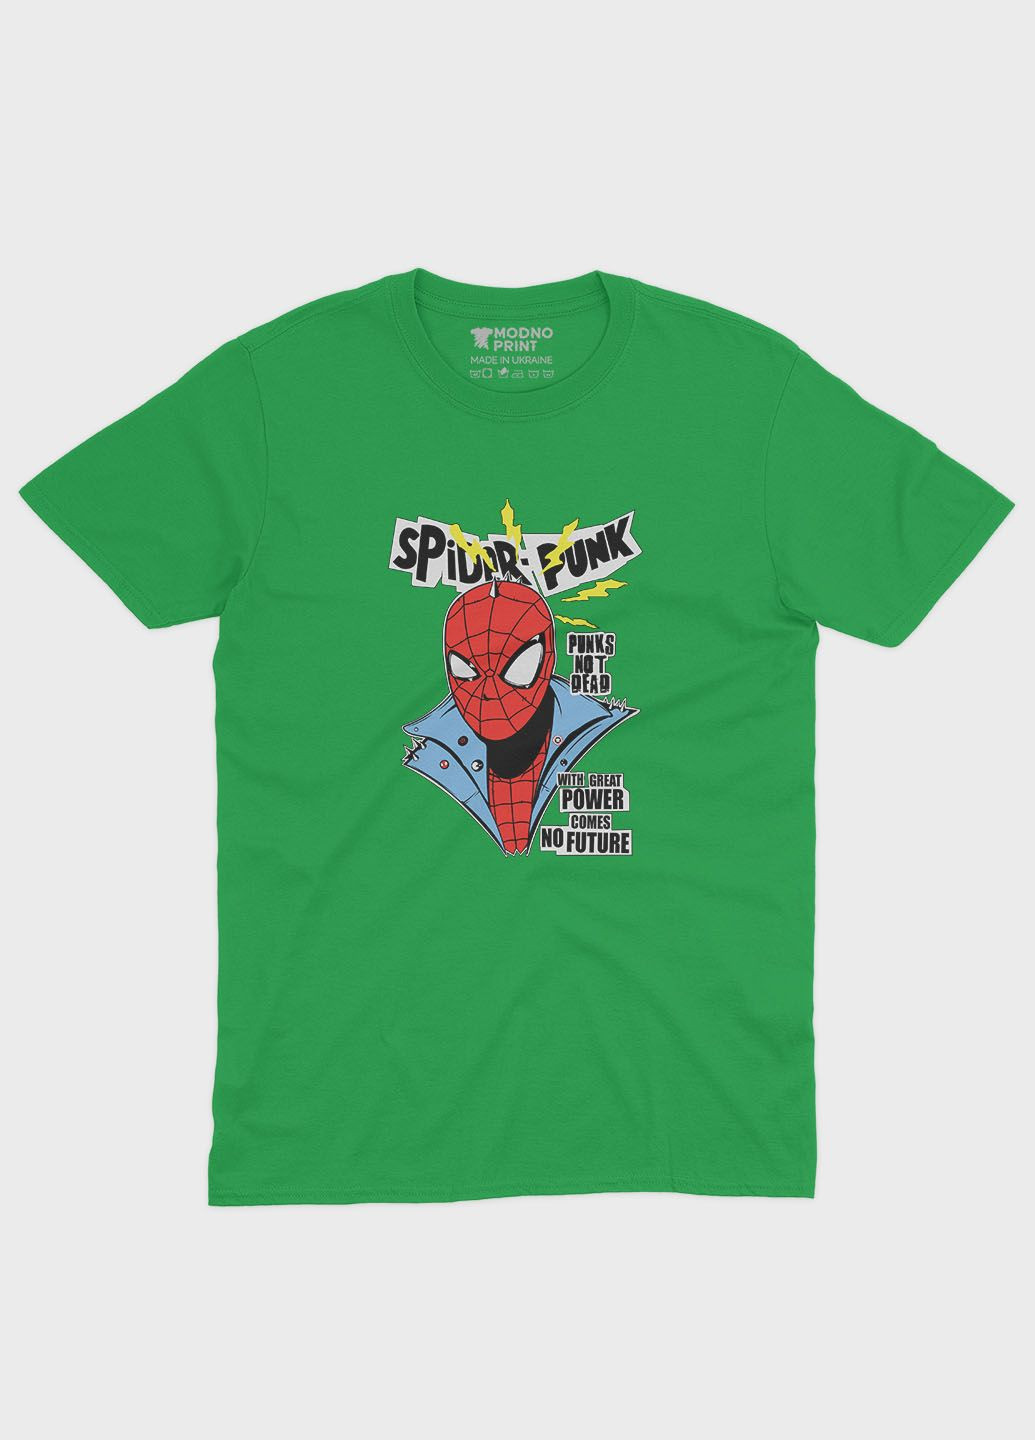 Зеленая демисезонная футболка для мальчика с принтом супергероя - человек-паук (ts001-1-keg-006-014-017-b) Modno